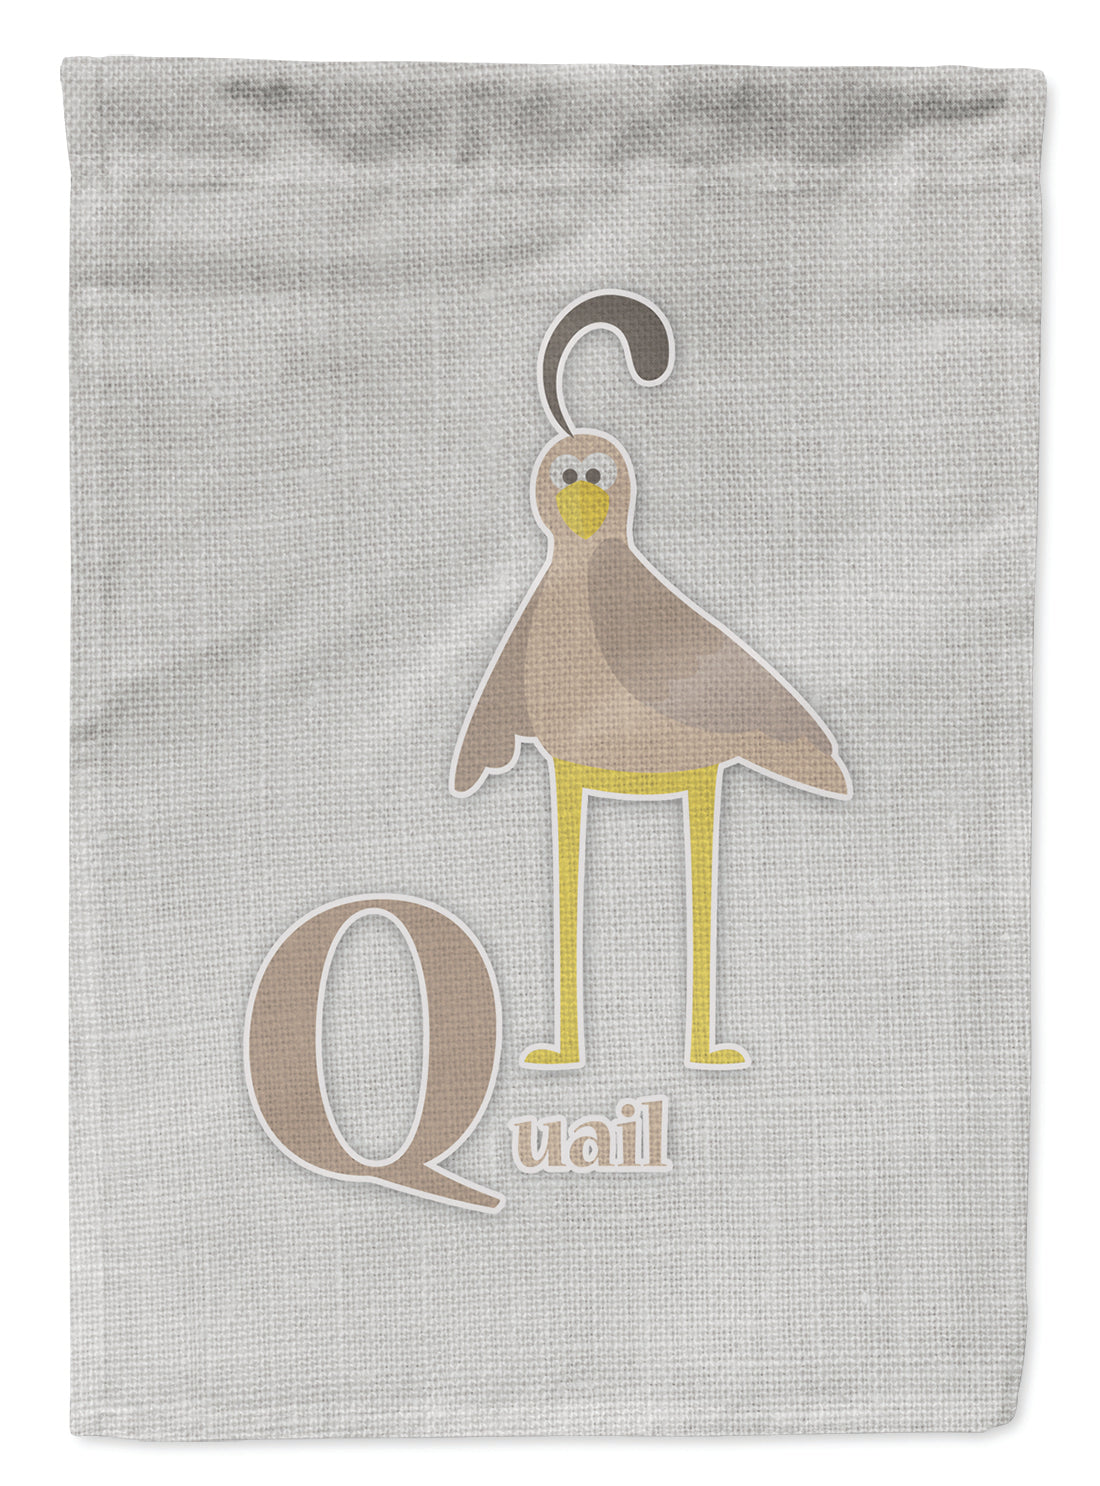 Alphabet Q for Quail Flag Garden Size BB5742GF  the-store.com.